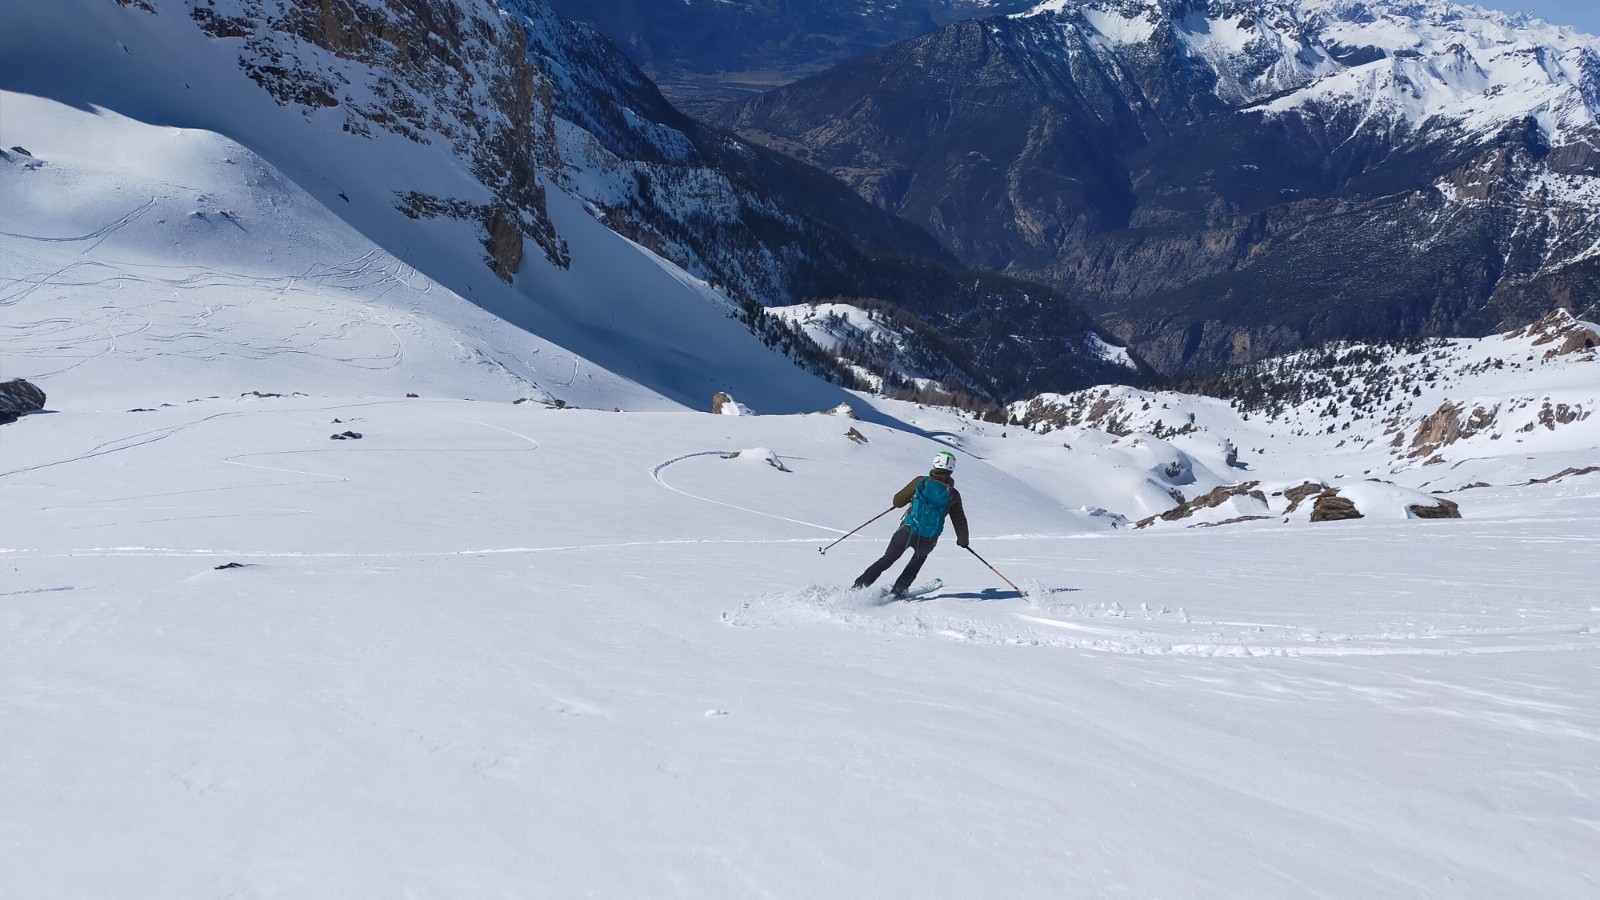  Et neige bien correcte facile à skier 